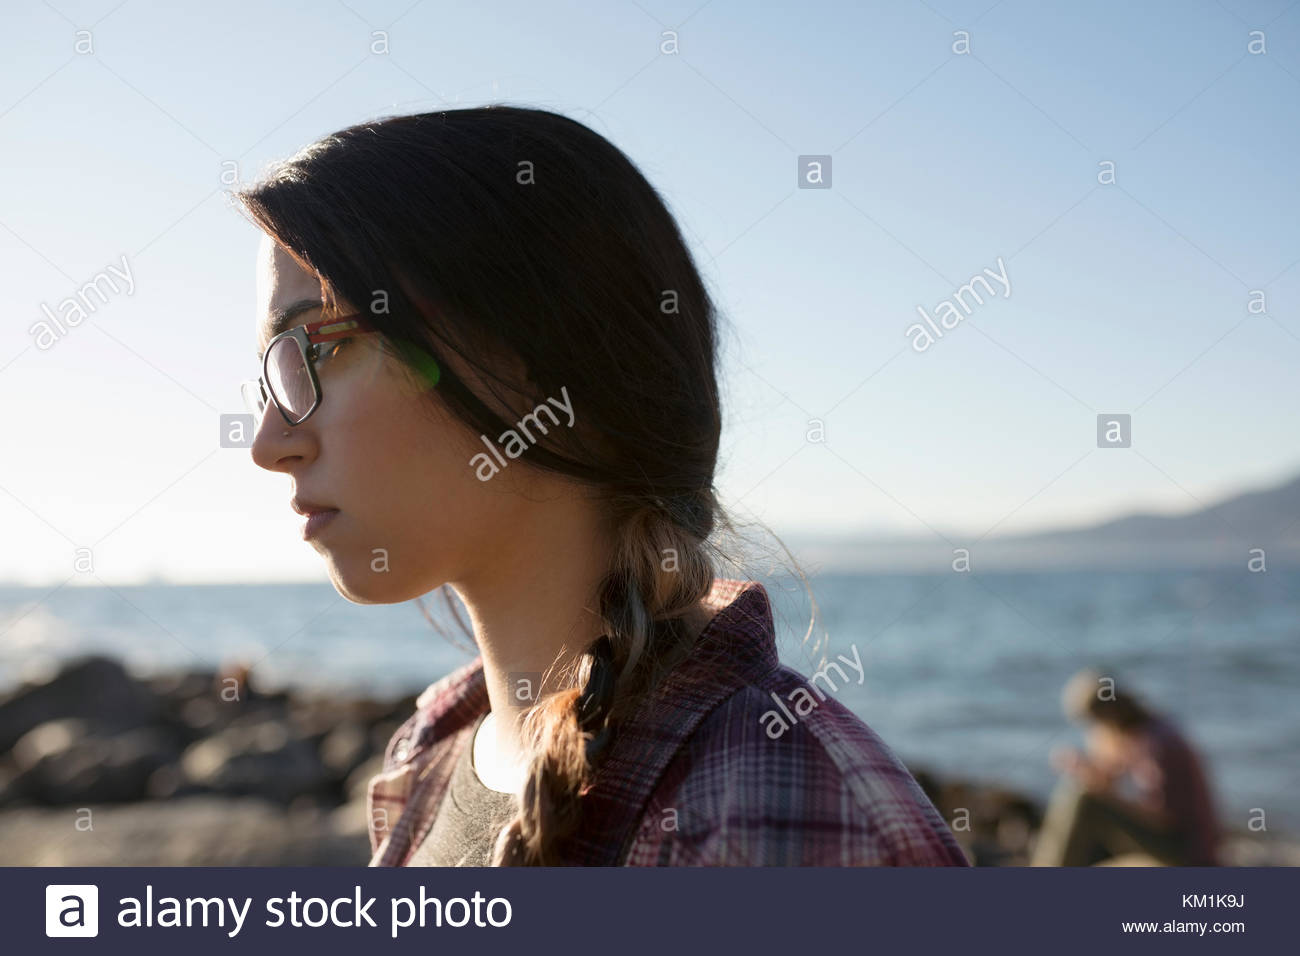 Sérieux, pensive brunette woman braid sur sunny beach océan Banque D'Images